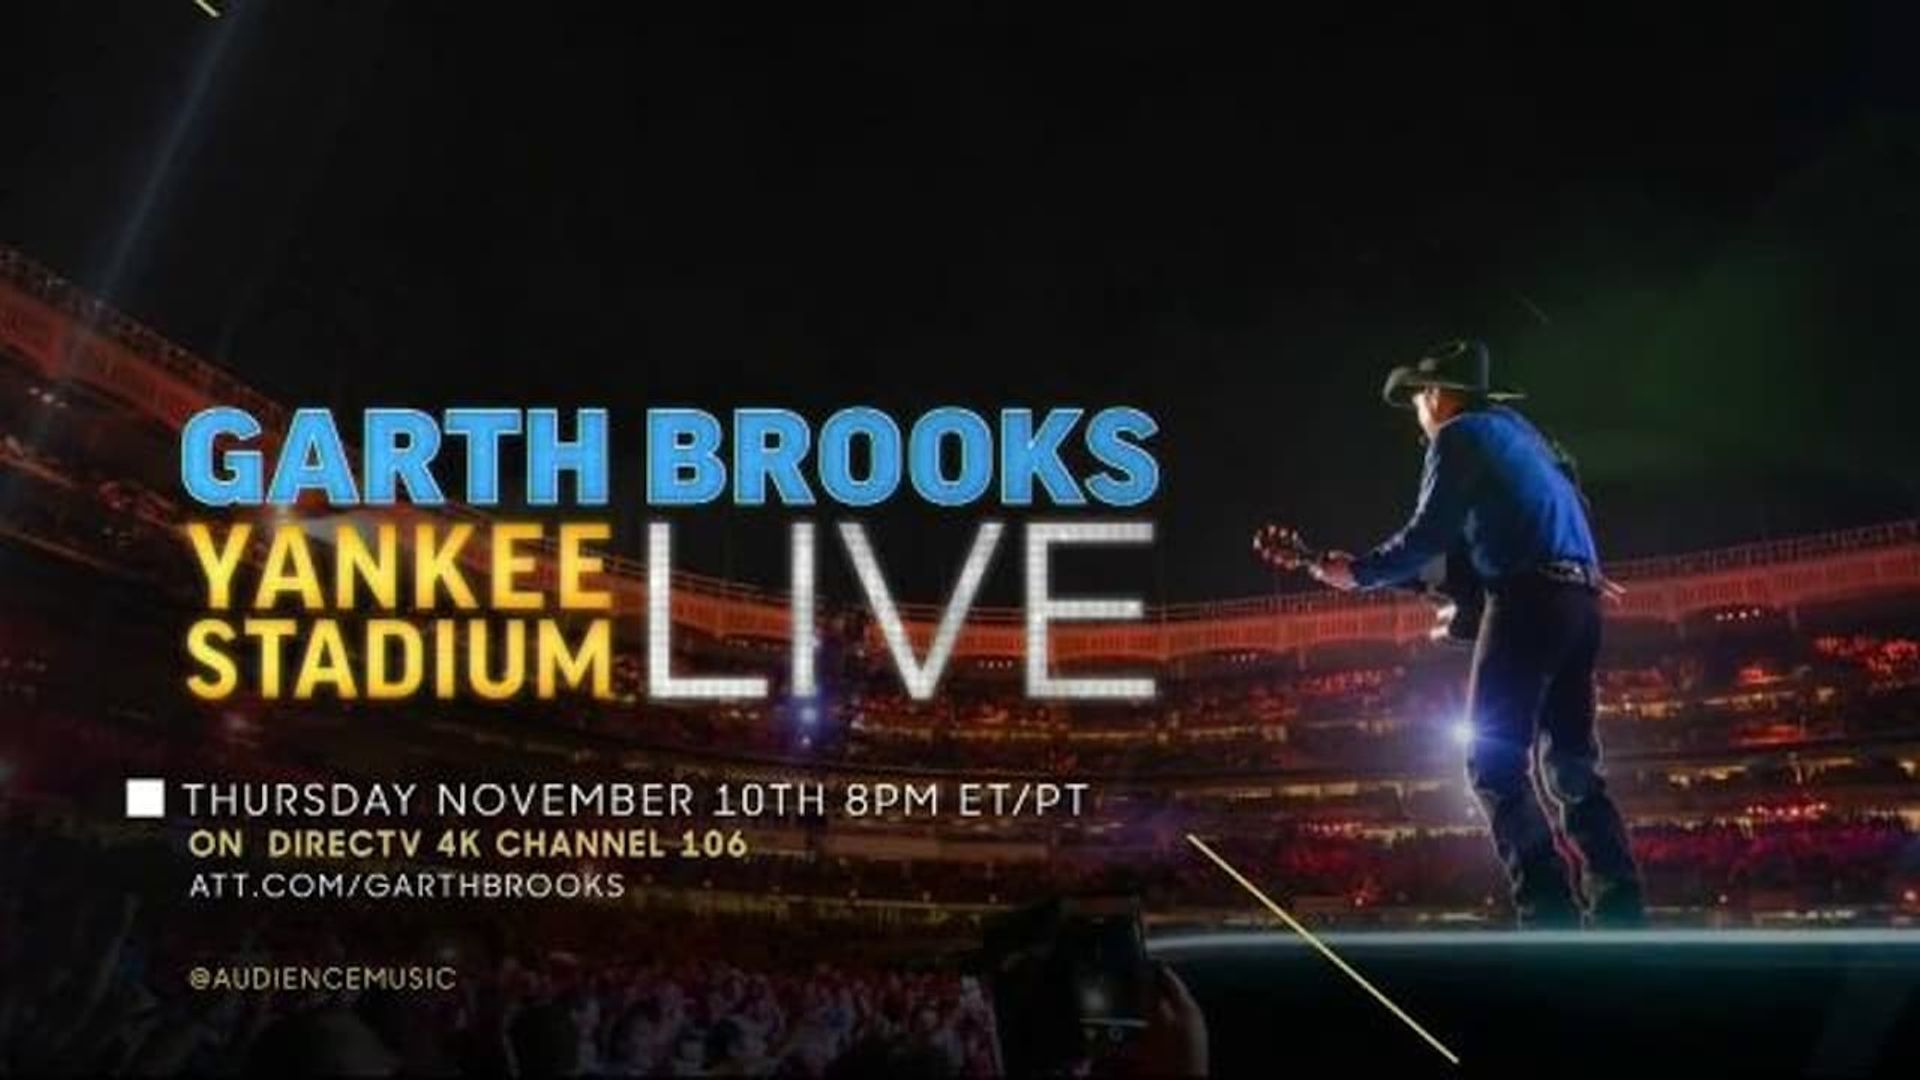 Garth Brooks: Yankee Stadium Live background